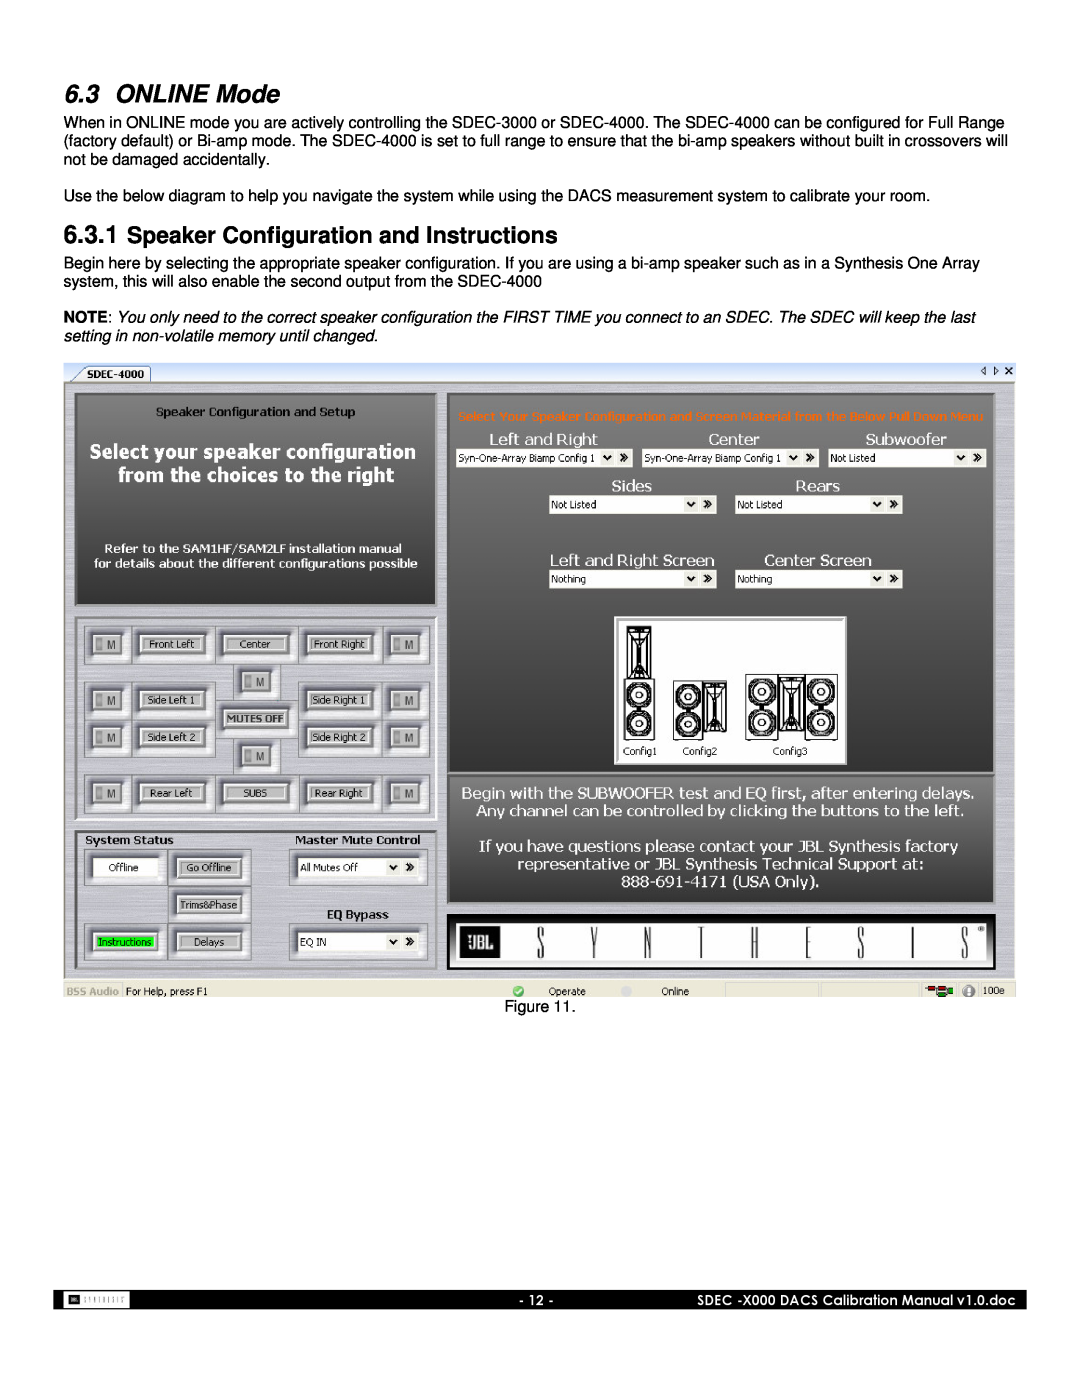 JBL SDEC-3000, SDEC-4000 manual ONLINE Mode, 6.3.1Speaker Configuration and Instructions 